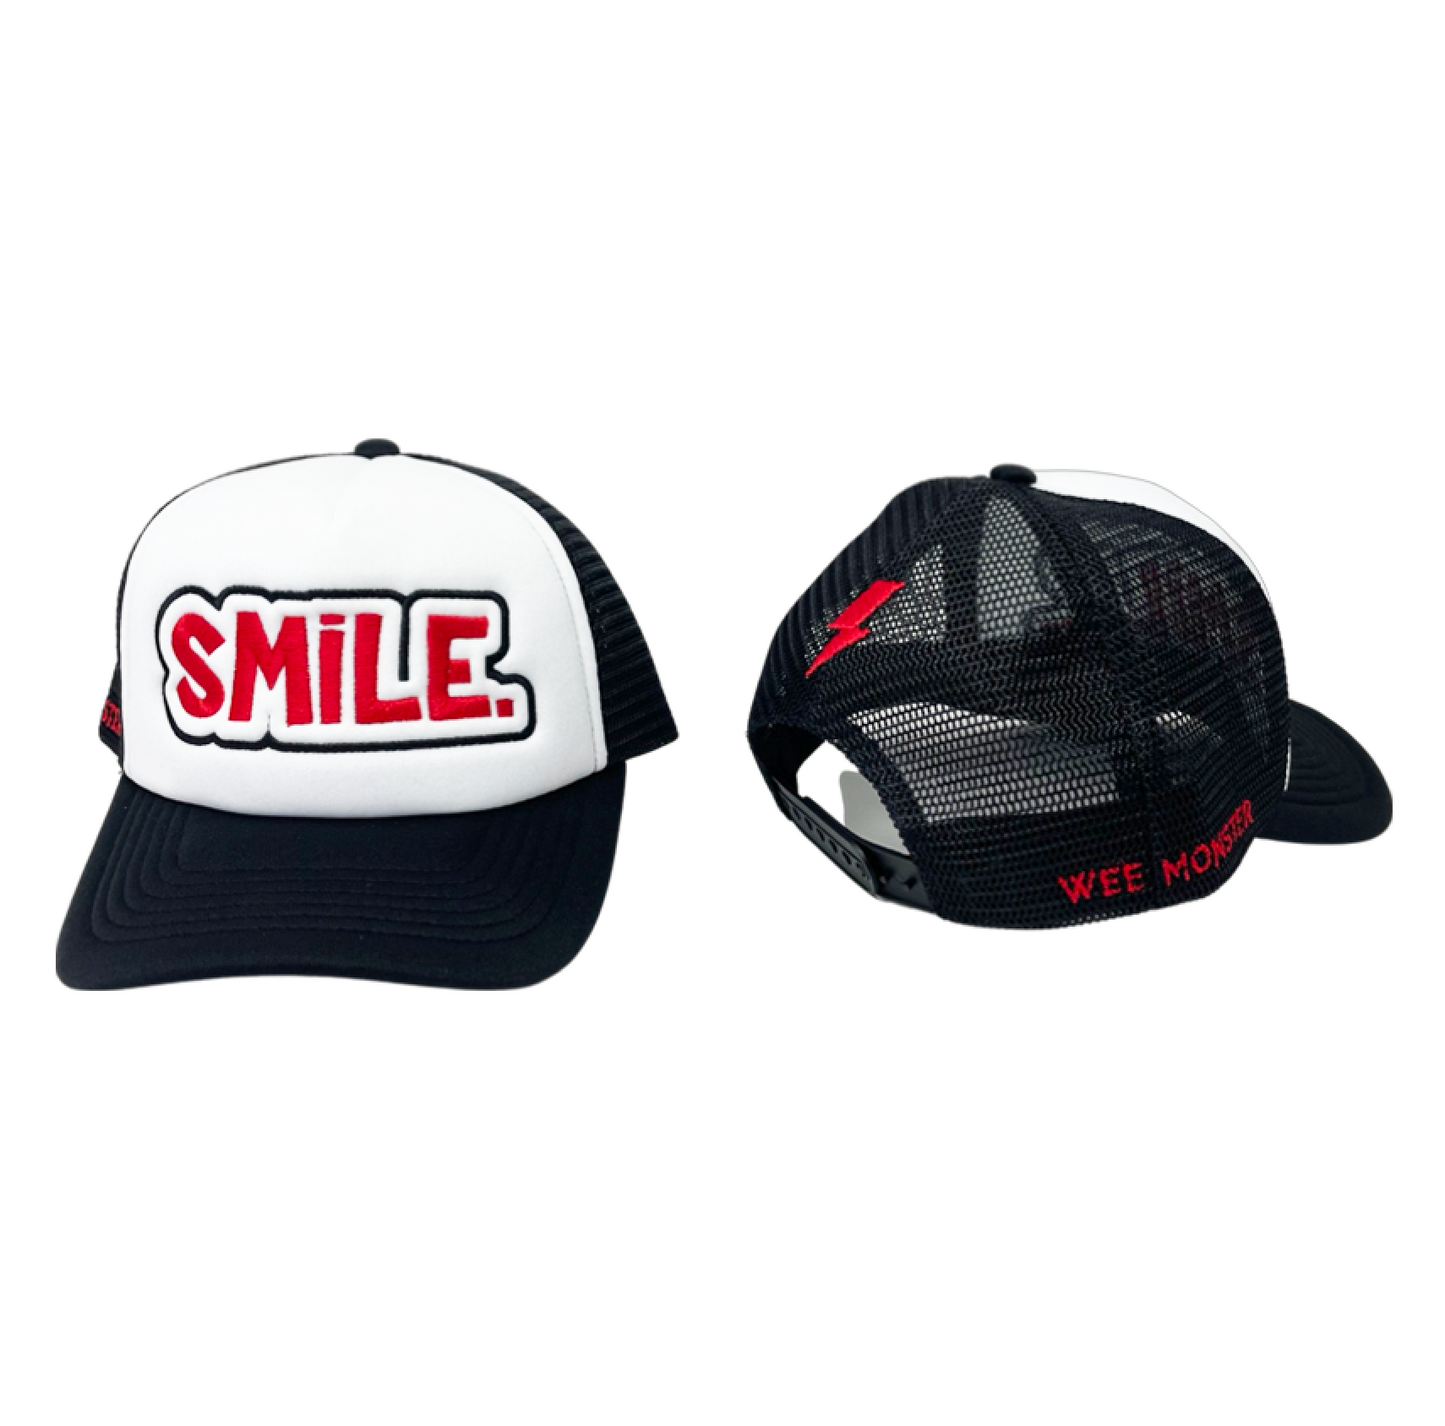 SMILE Trucker Hat - Unisex for Boys and Girls